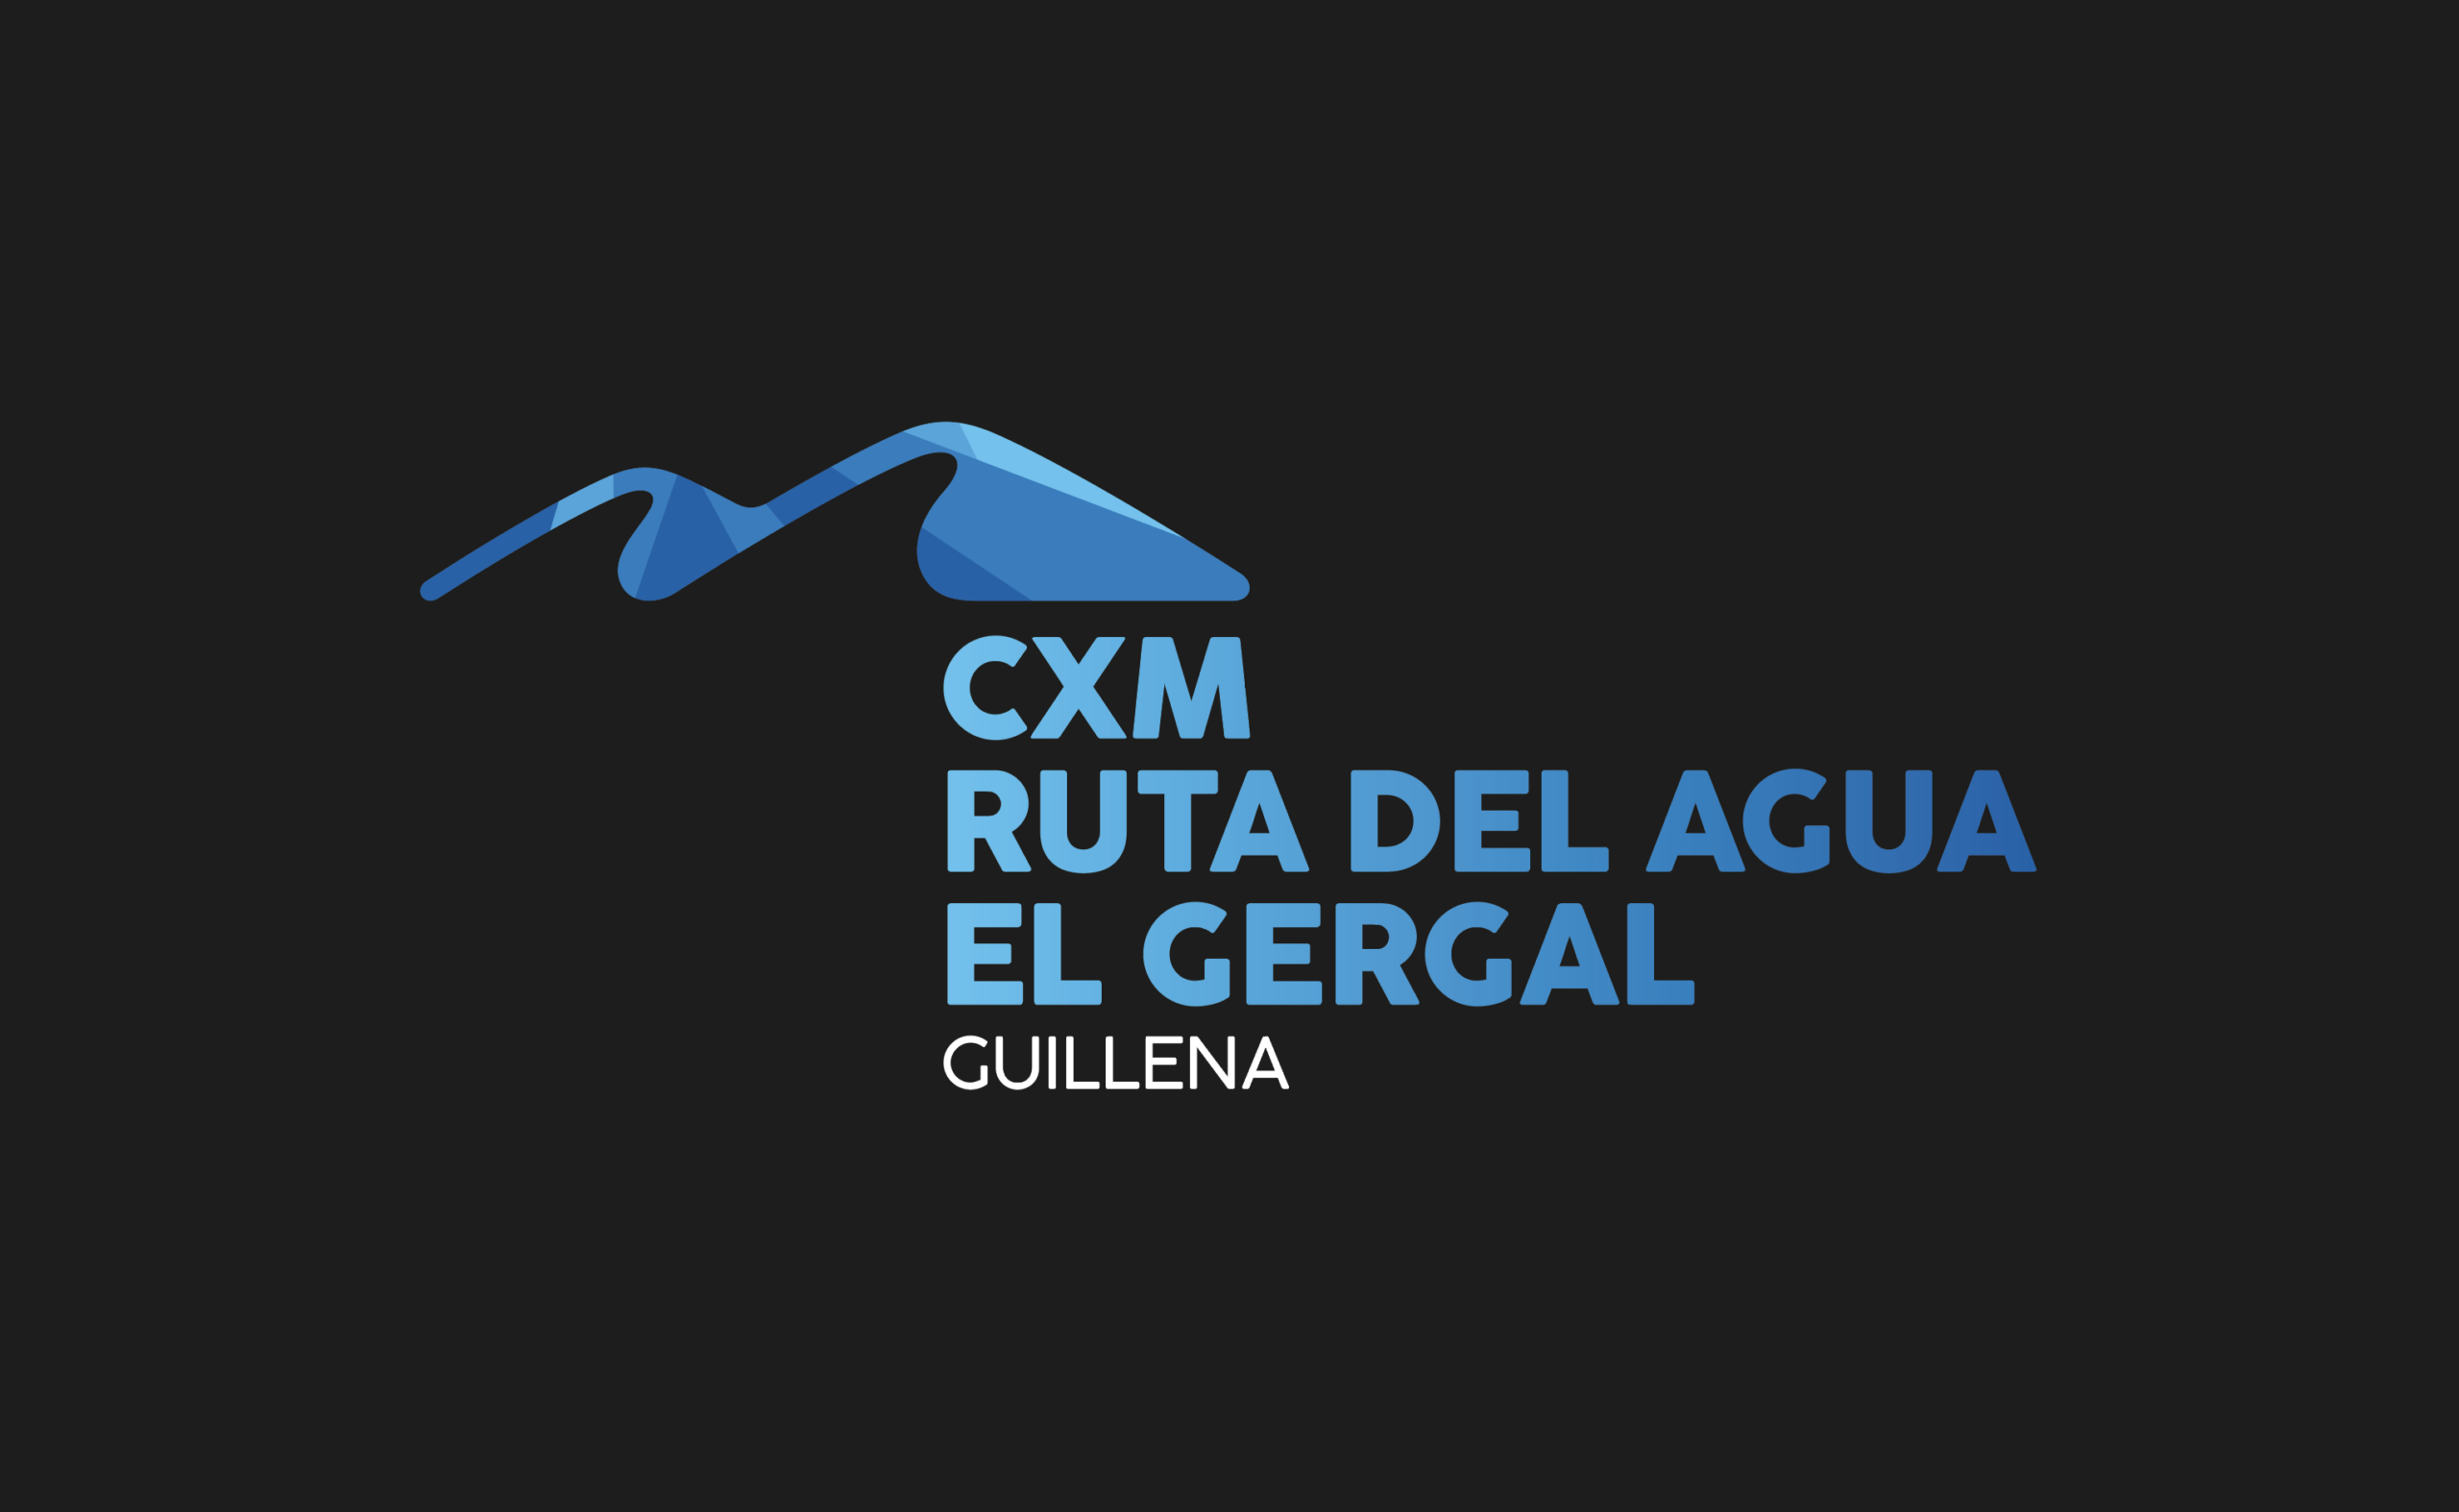 CxM Ruta del Agua – El Gergal